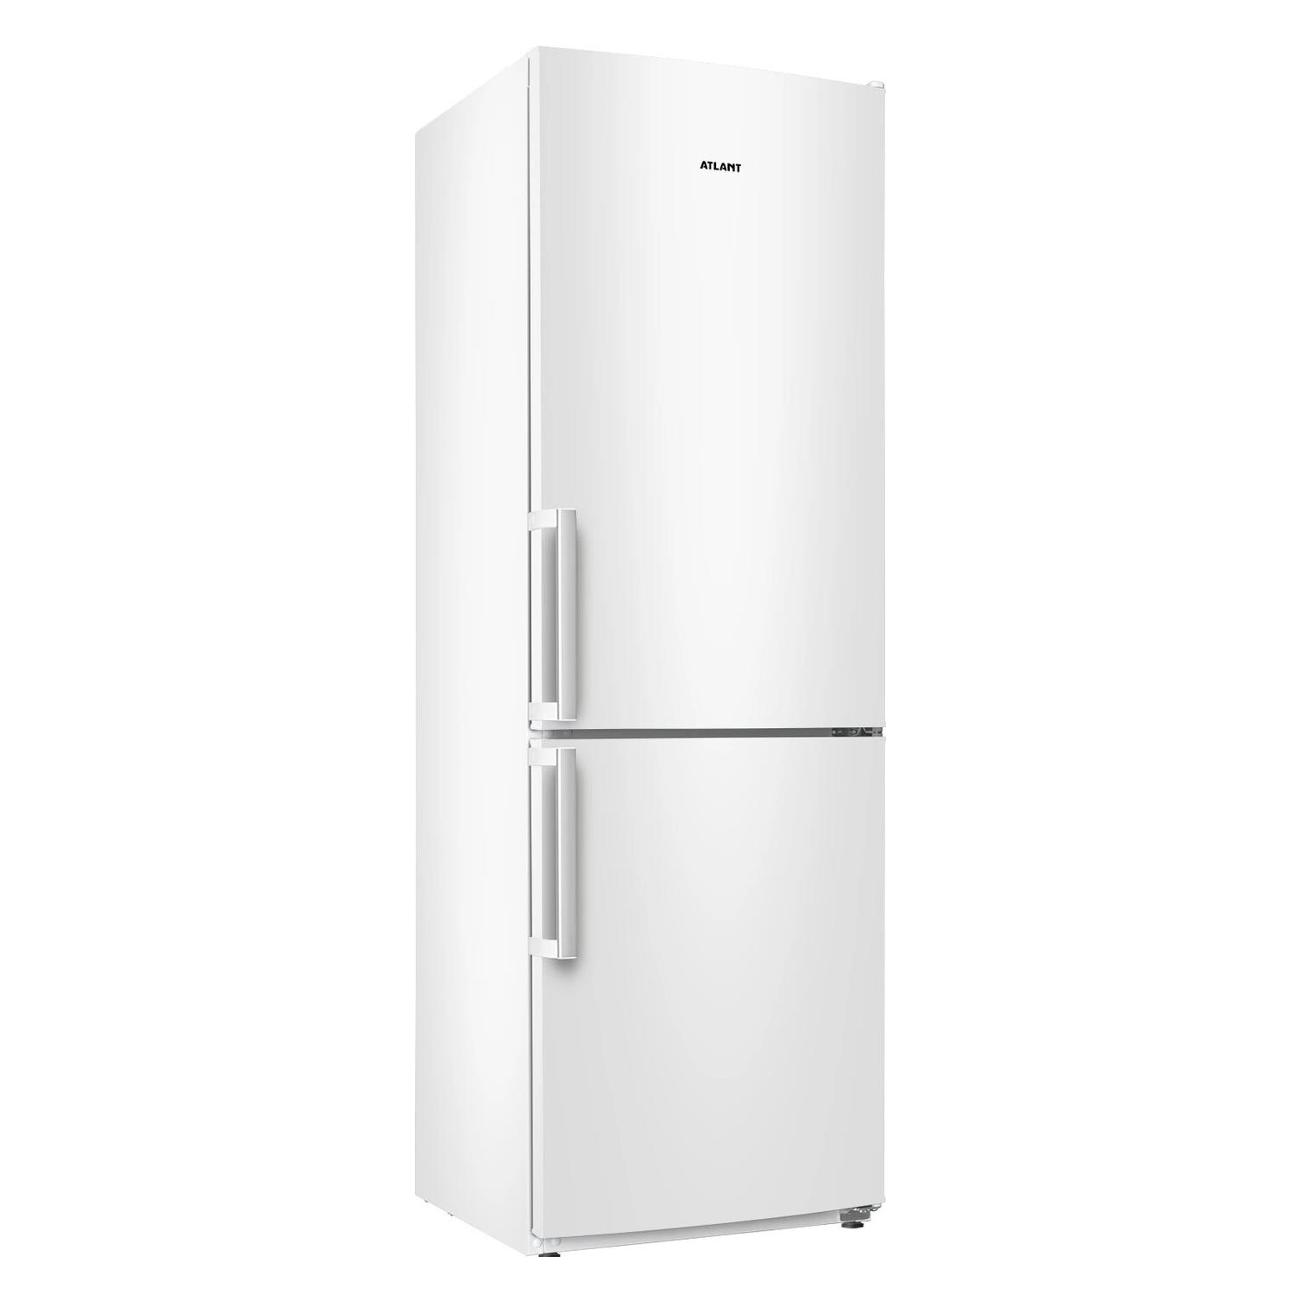 Холодильник атлант купить москва с доставкой. Холодильник ATLANT 4021-000. Холодильник ATLANT хм 4021-000. Холодильник Атлант 4421-000-n. Холодильник Атлант 4025-000.